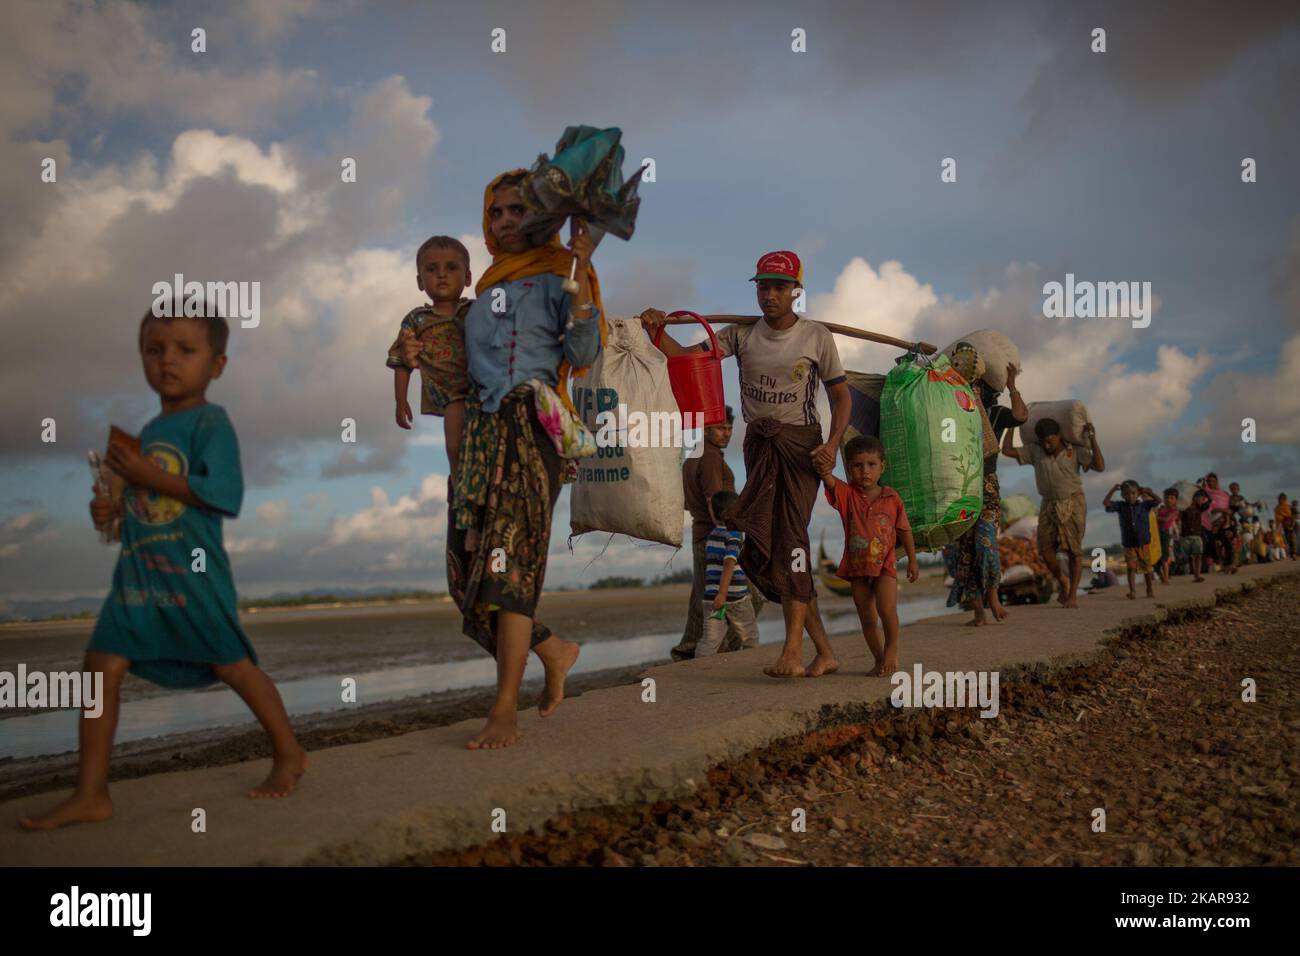 Los refugiados rohingya están entrando en Bangladesh. Shahpirer Dip, Teknaf, Bangladesh; 14 de septiembre de 2017. Bangladesh utilizará tropas para entregar ayuda extranjera a la ciudad fronteriza que ha sido abrumada por los refugiados musulmanes rohingya de Myanmar, anunciaron las autoridades a finales de septiembre de 14. La medida es consecuencia de las críticas de las condiciones caóticas en las que se han entregado suministros de socorro en los enormes campamentos situados alrededor de Cox's Bazar, a los que han llegado unos 389.000 rohingya del estado de Rakhine en Myanmar desde agosto de 25. (Foto de Turjoy Chowdhury/NurPhoto) Foto de stock